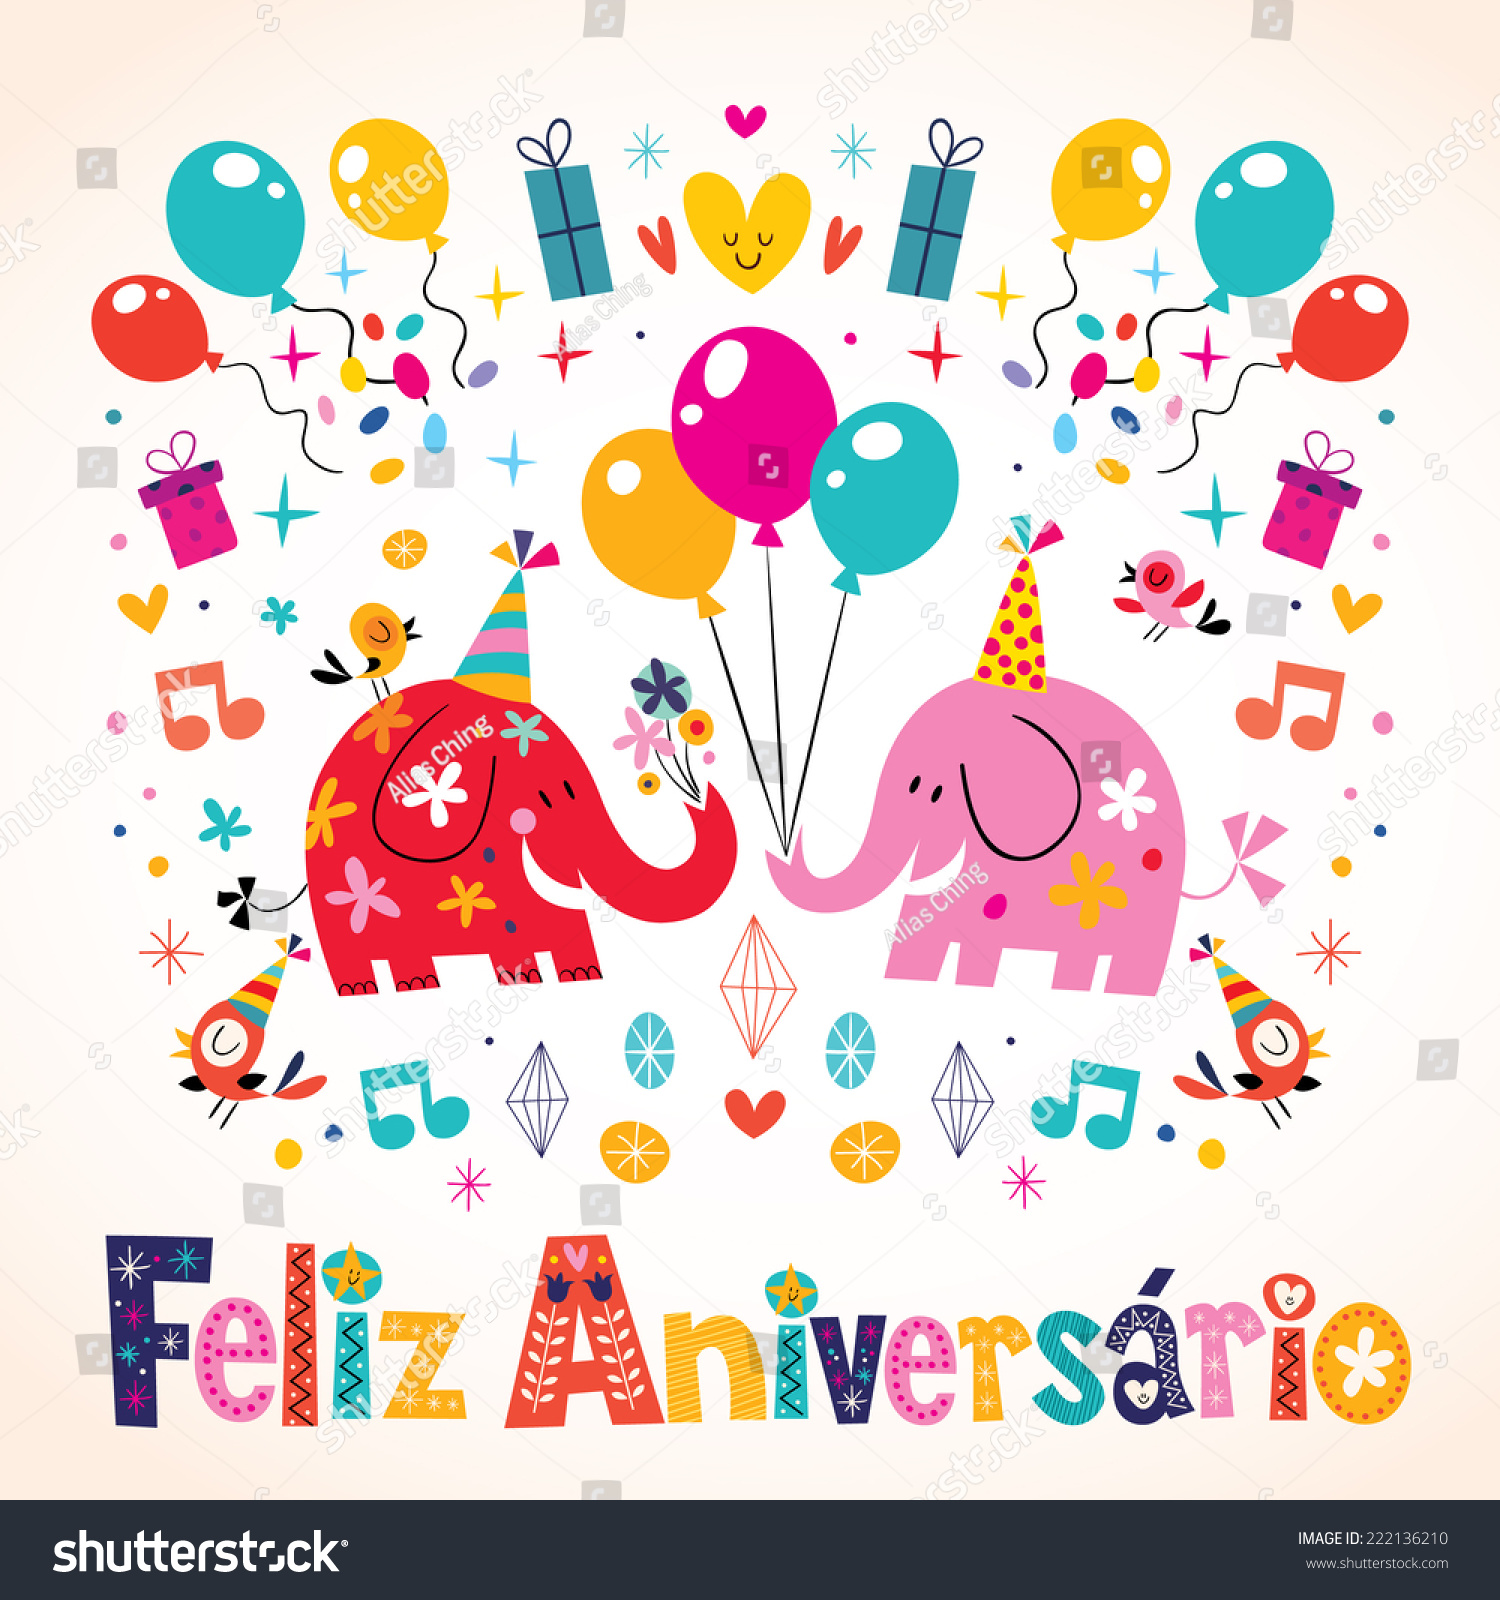 Image Vectorielle De Stock De Carte D Elephant Mignon Feliz Aniversario Portugais